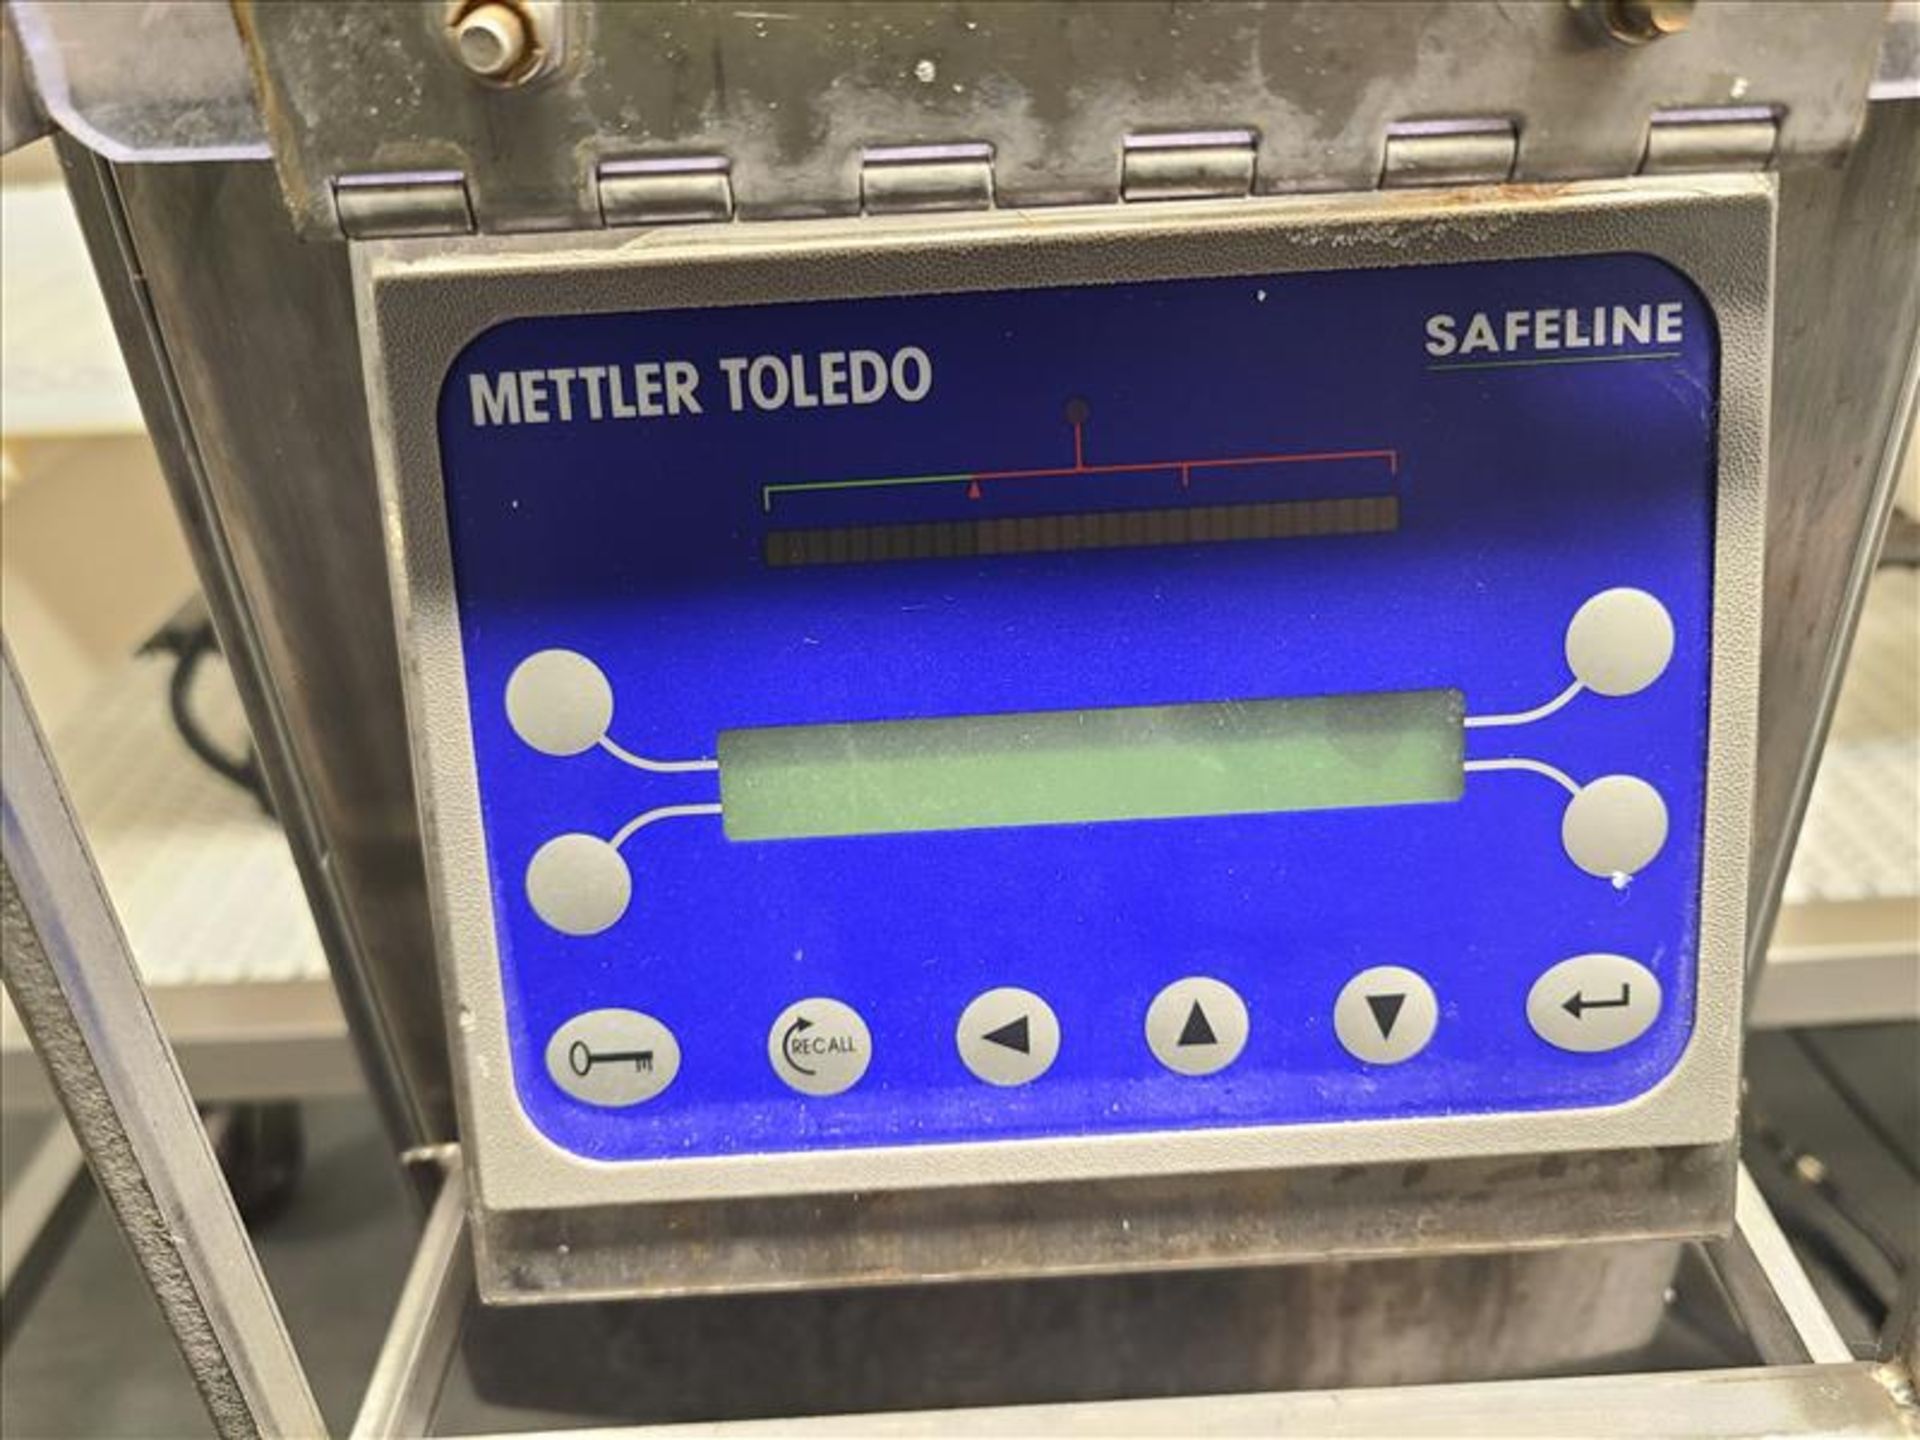 (2) Mettler Toledo metal detectors, model Safeline, 15 3/4 in. x 6 in. and 17 1/2 in. x 7 in. - Image 3 of 5